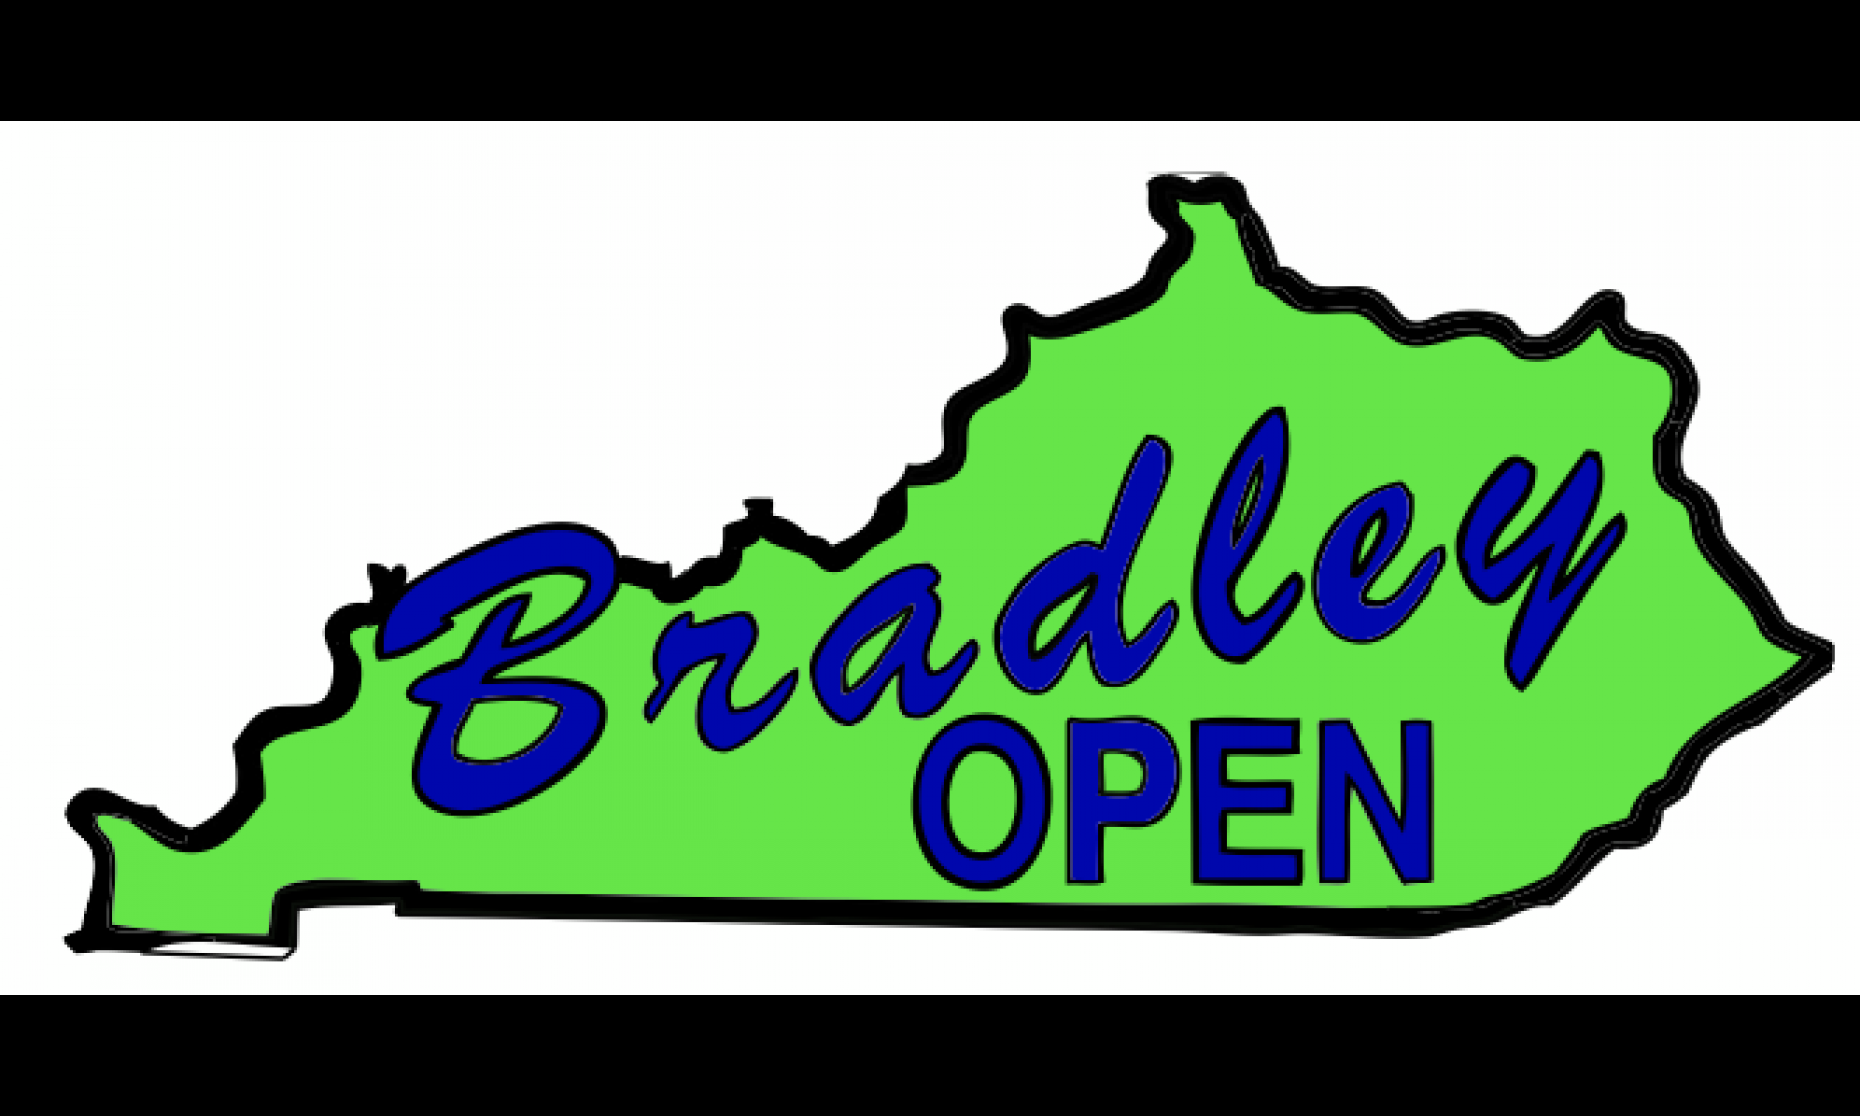 Bradley Open Logo